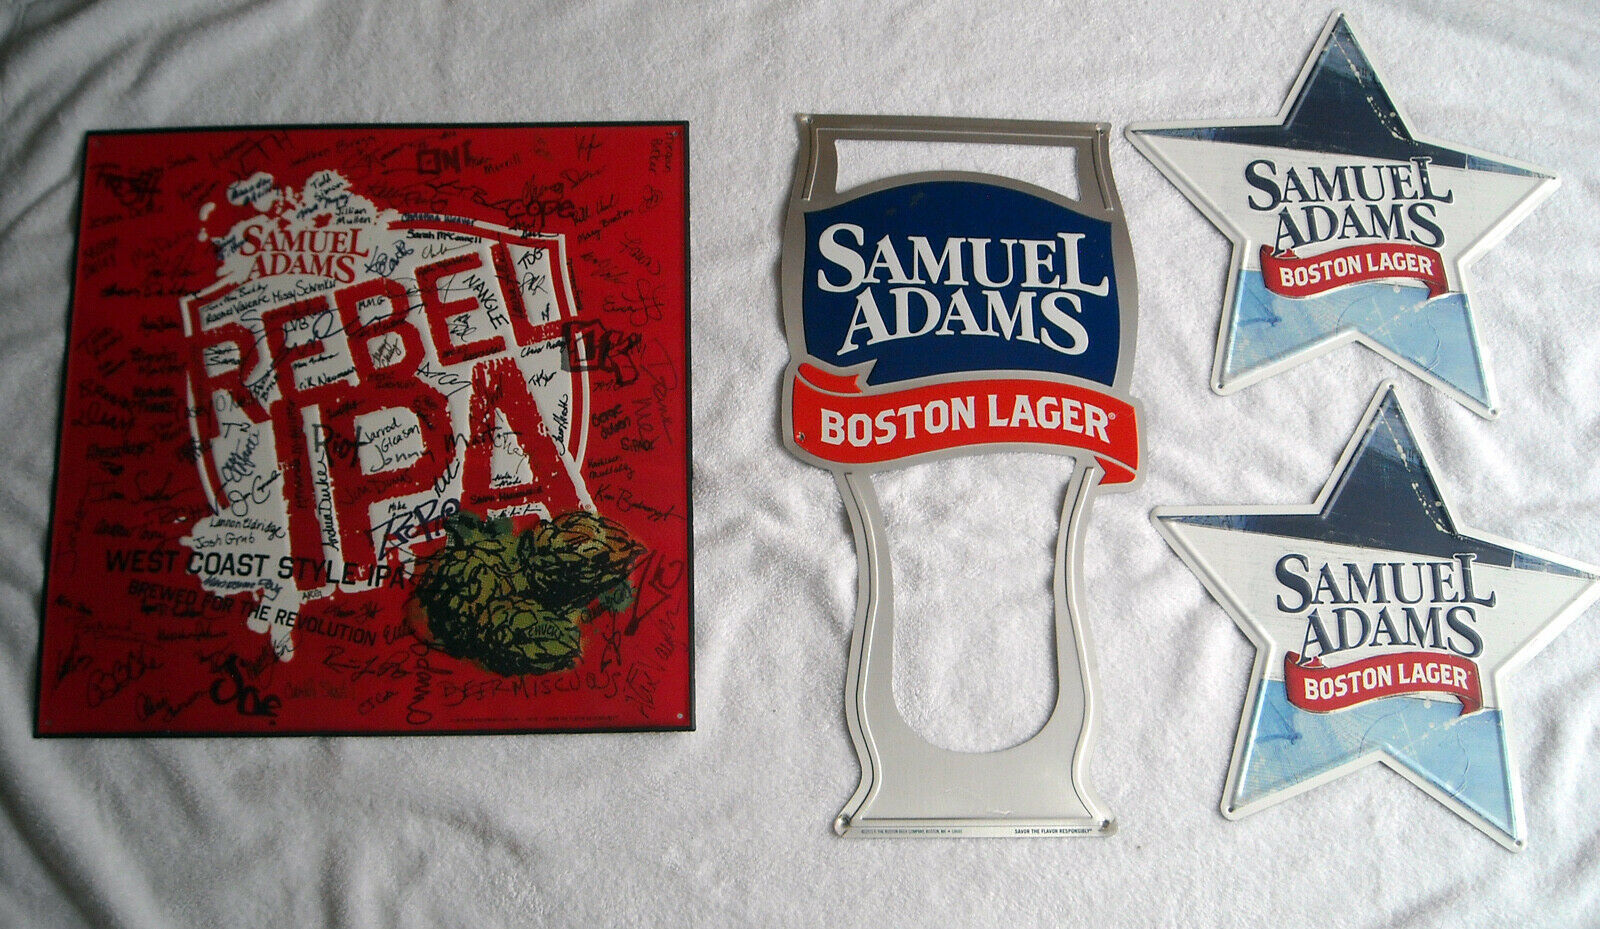 4 Samuel Adams Brewing Co Beer Metal Signs Boston Lager West Coast Style IPA - $74.20